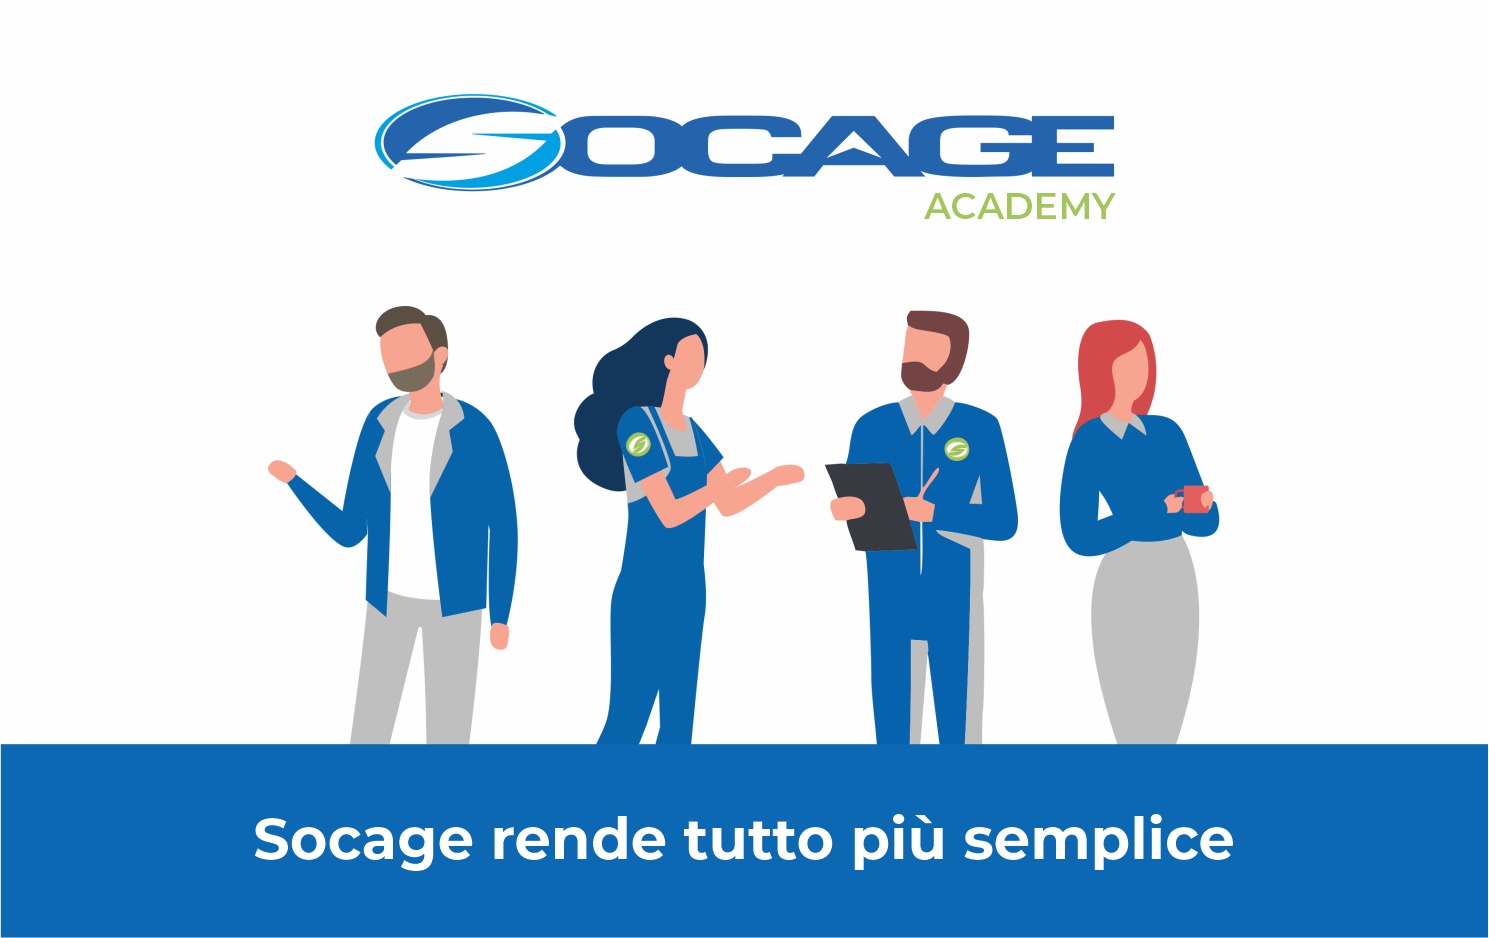 Socage Academy | Socage rende tutto più semplice